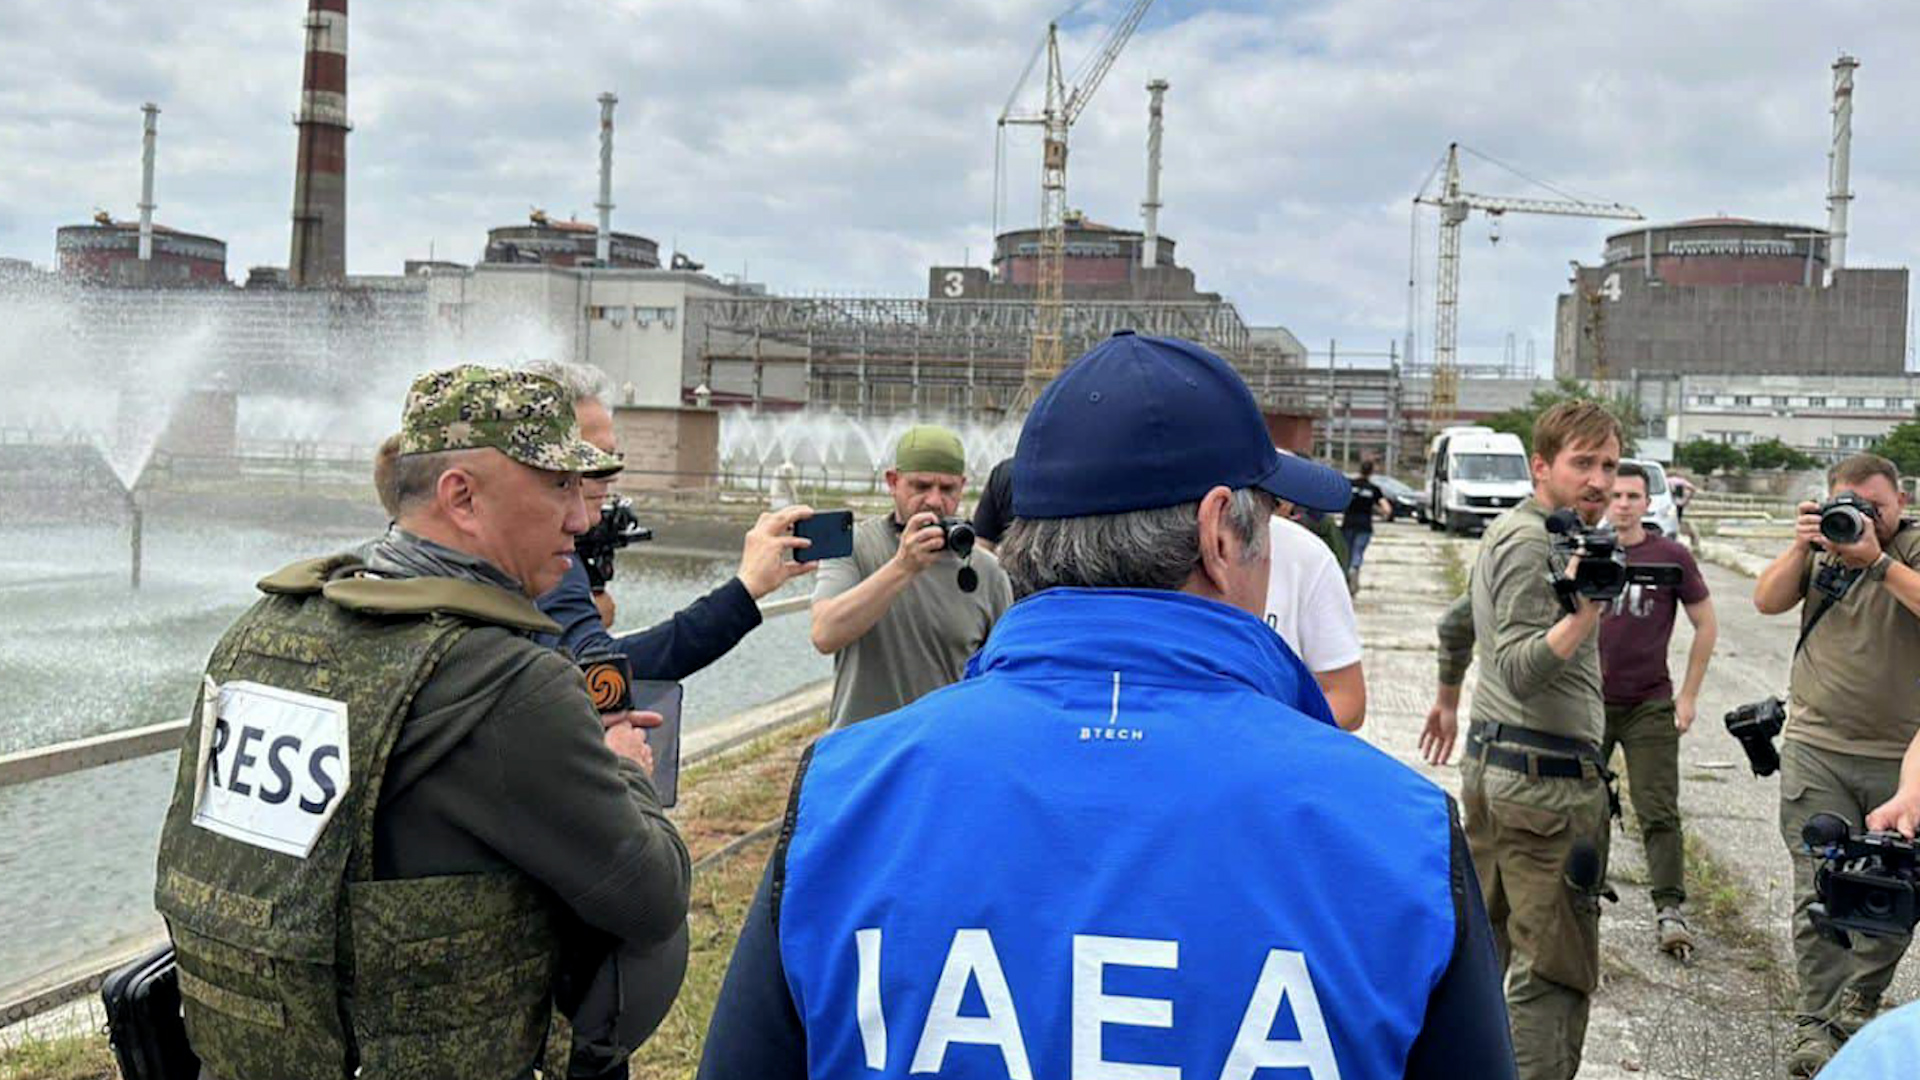 Nga bác bỏ sau khi bị Ukraine tố cân nhắc tấn công nhà máy điện hạt nhân - Ảnh 1.